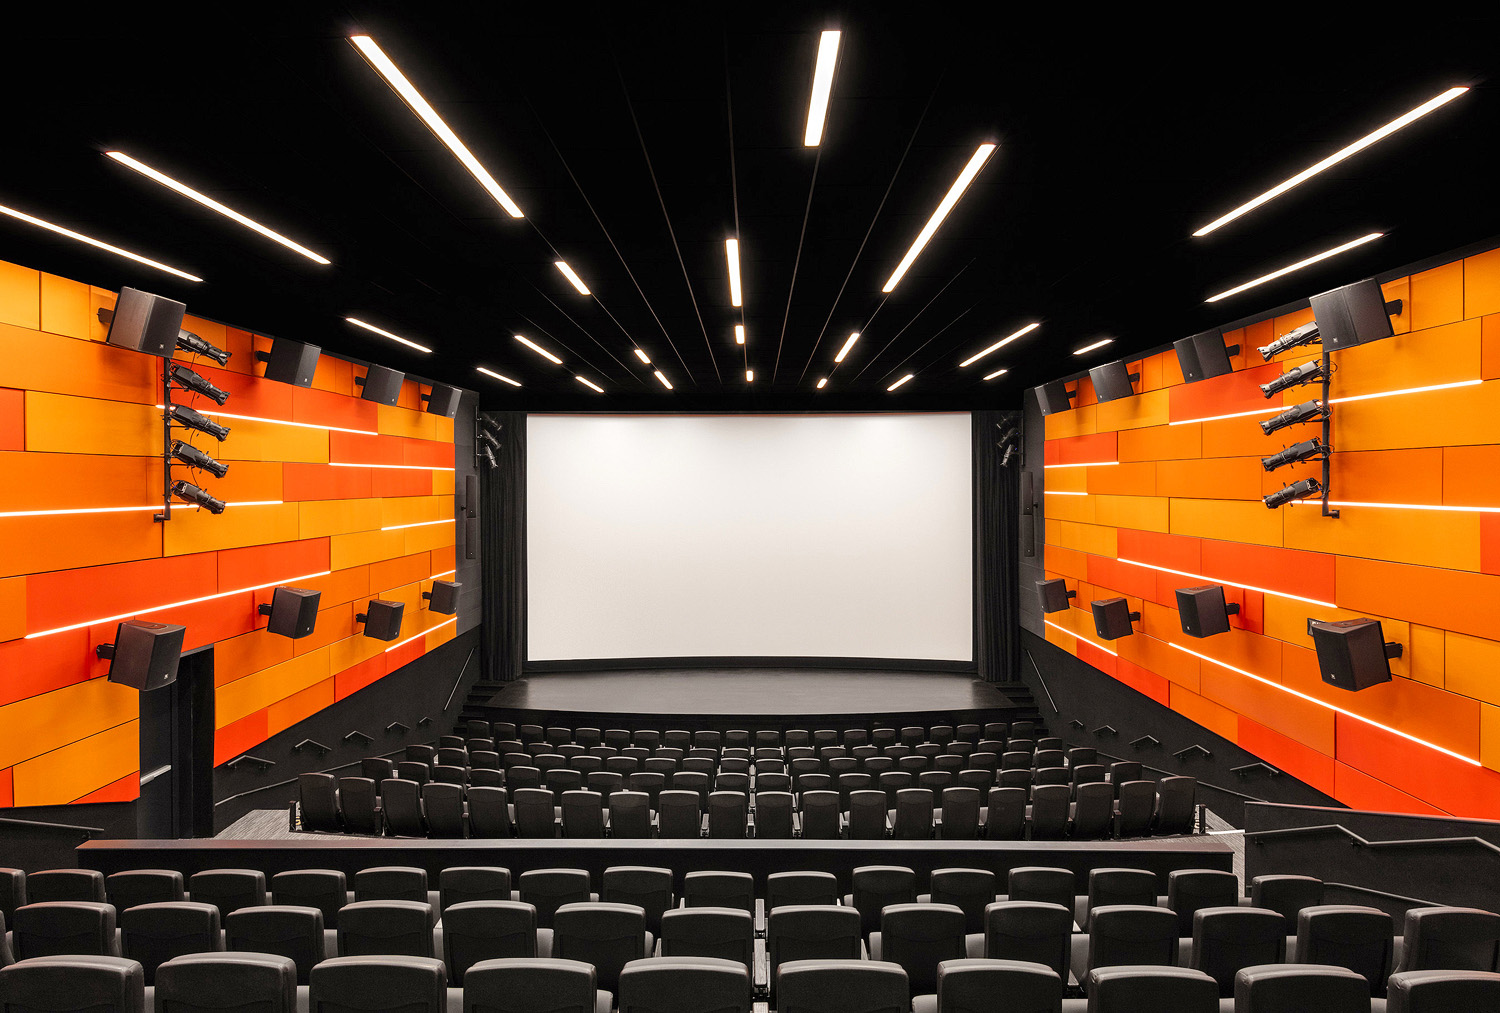 Das Cinemark® Theater im Museum umfasst ein Film-Projektionssystem mit einem integrierten Soundsystem sowie ein separates AV-System, das öffentliche und private Veranstaltungen unterstützt.